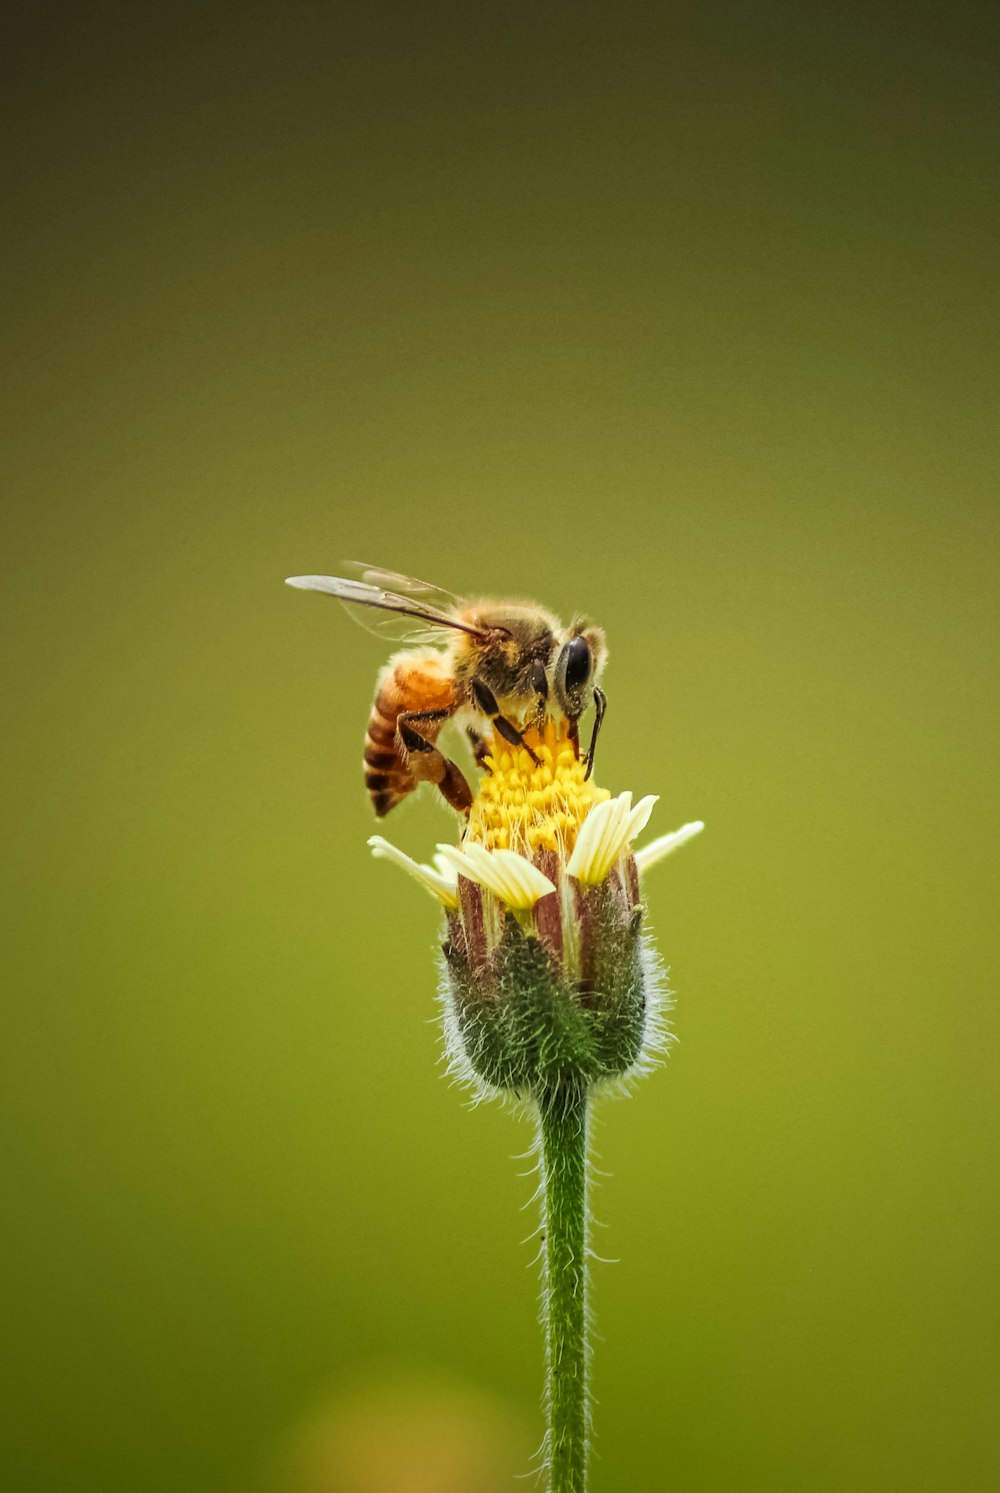 abeja posada en flor amarilla en fotografía de primer plano durante el día